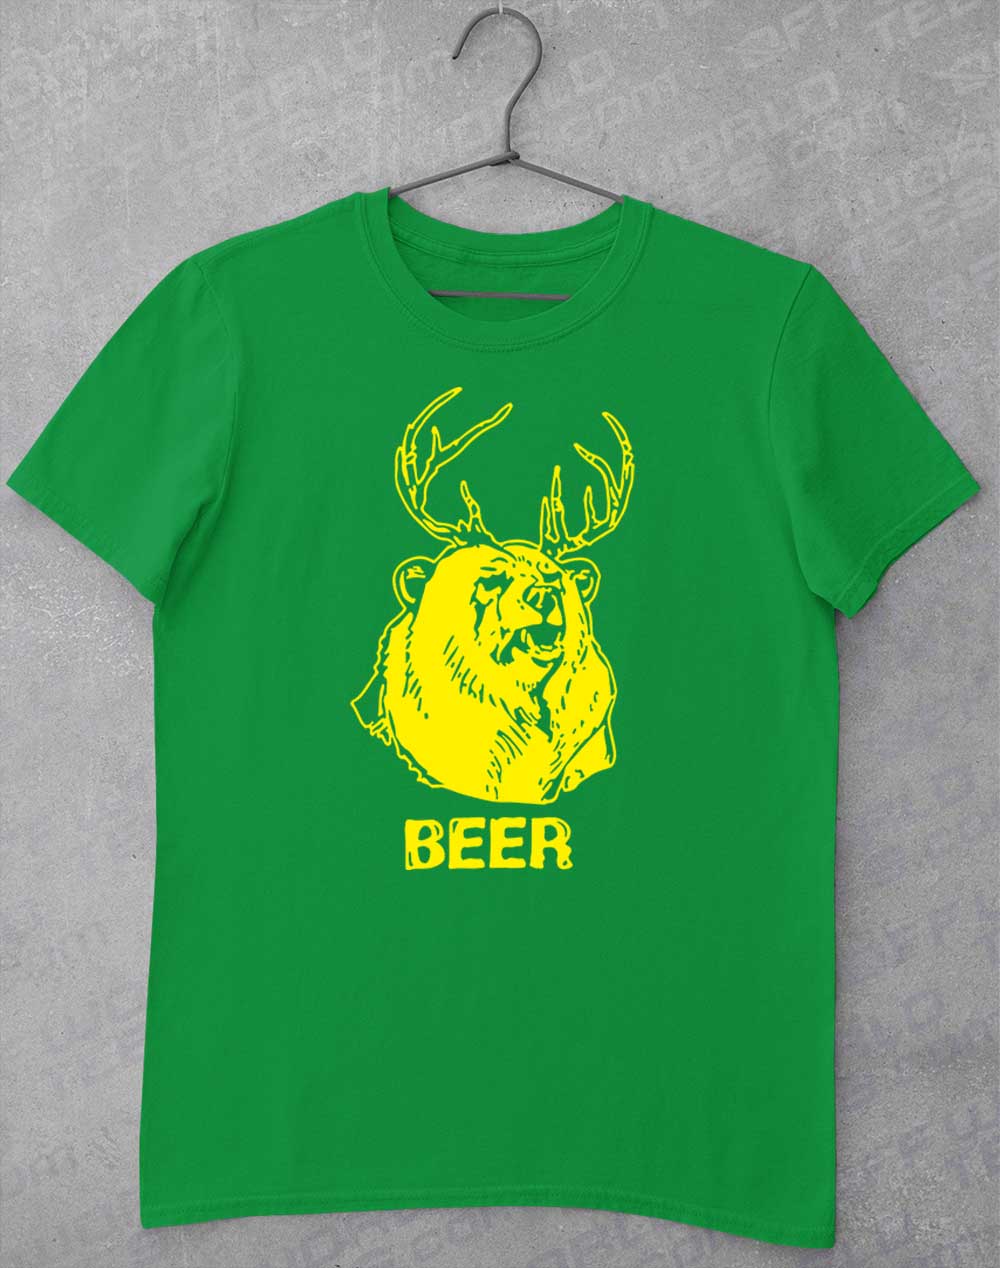 Irish Green - Mac's Beer T-Shirt